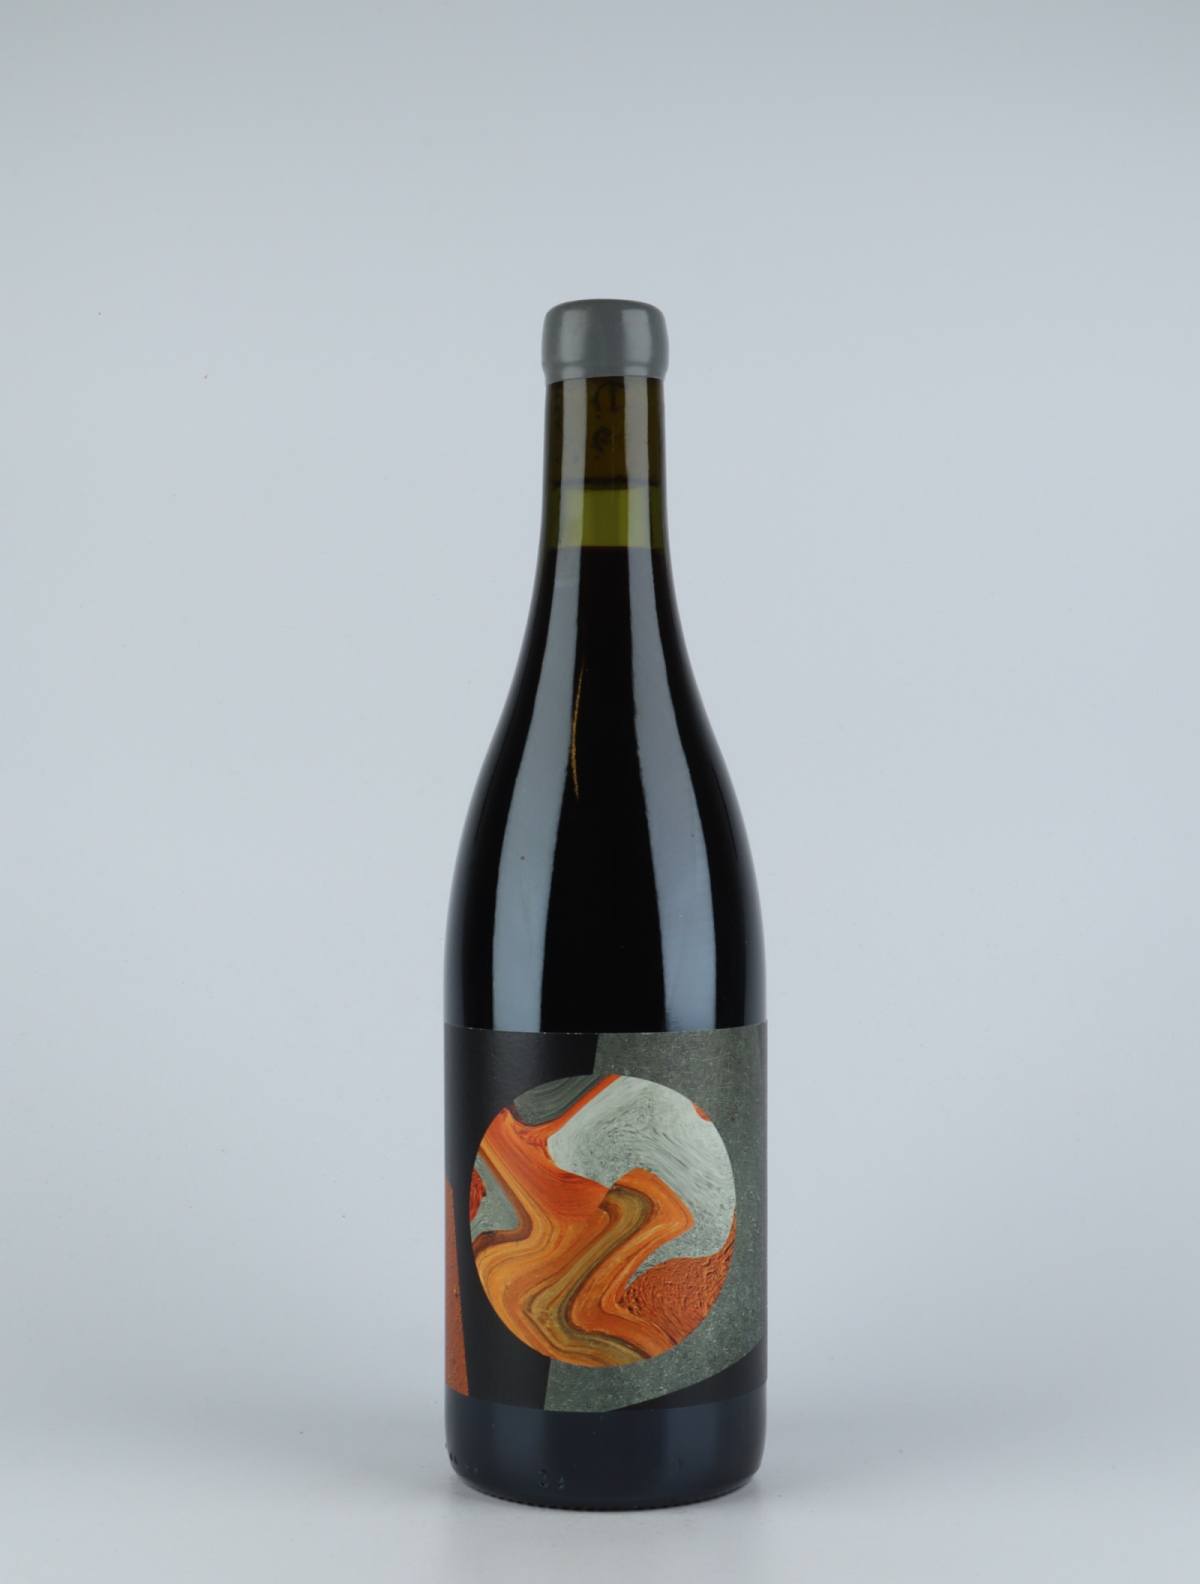 En flaske 2017 insyeme Rødvin fra do.t.e Vini, Toscana i Italien